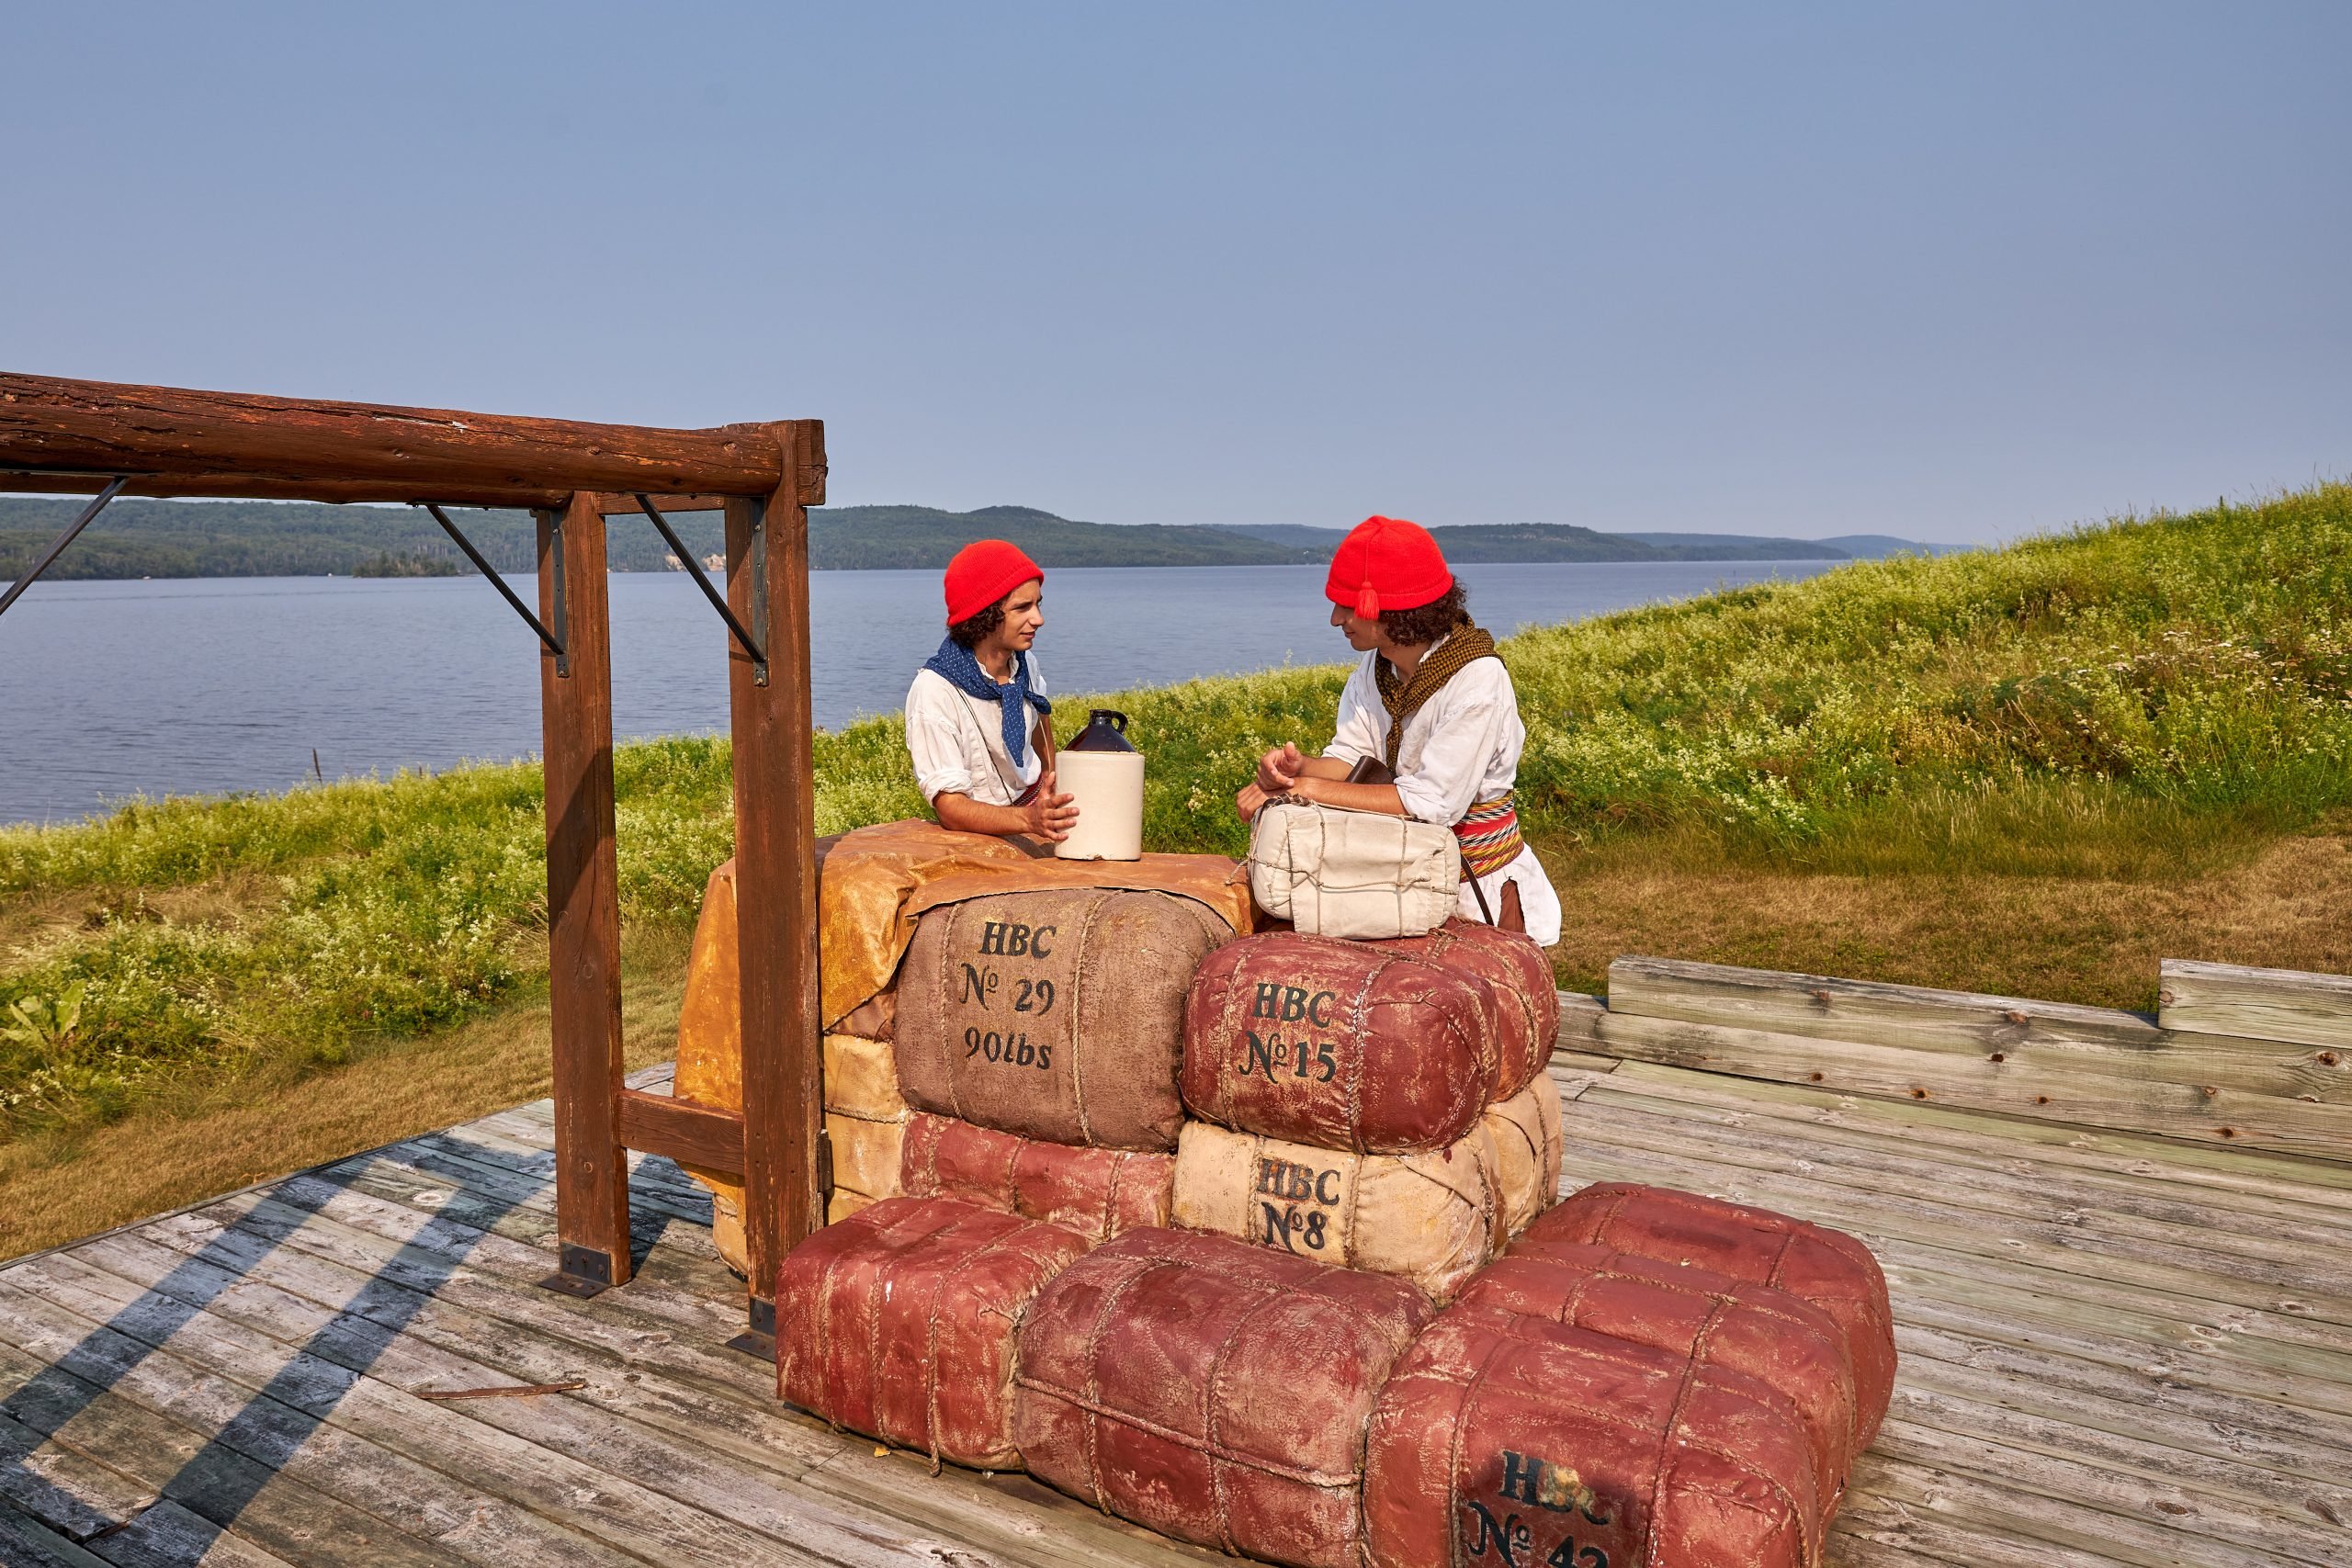 Deux statuts représentant les premiers arrivants blanc sur les rives du la Témiscamingue. Ceux-ci semblent marchander des biens qui se trouvent sous forment de ballot. 